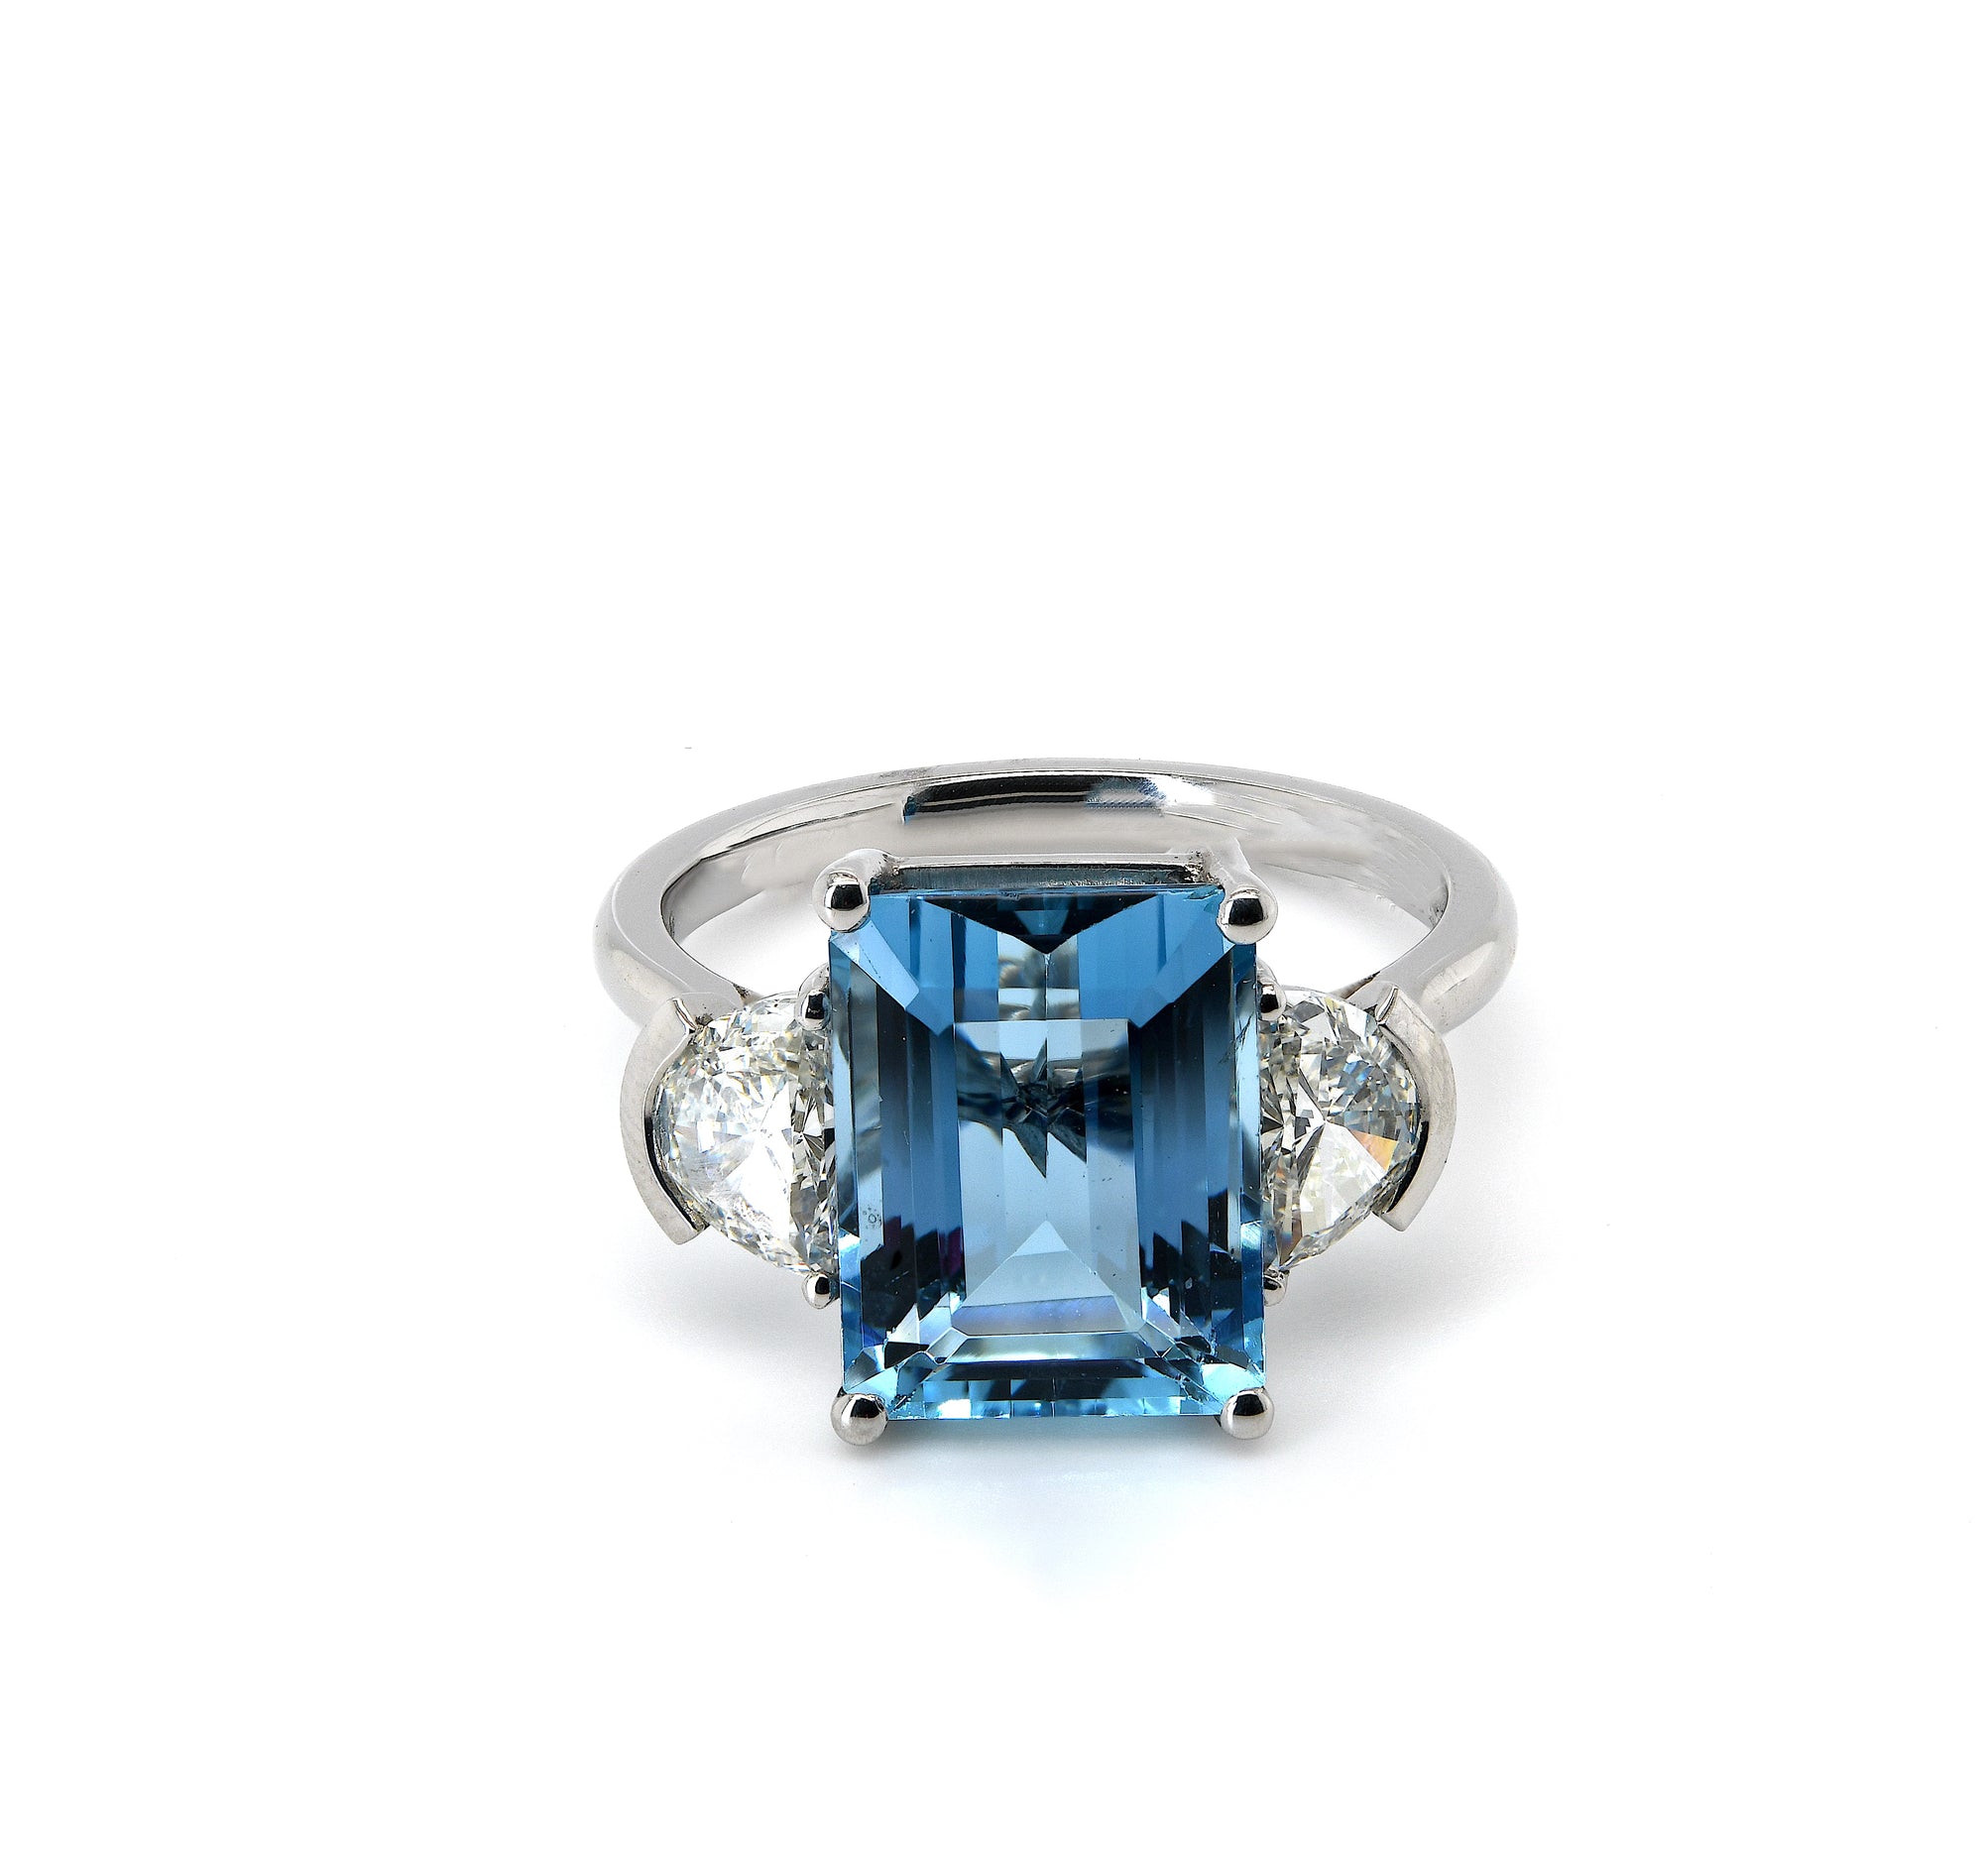 4.79ct aquamarine & diamond cocktail ring set in platinum